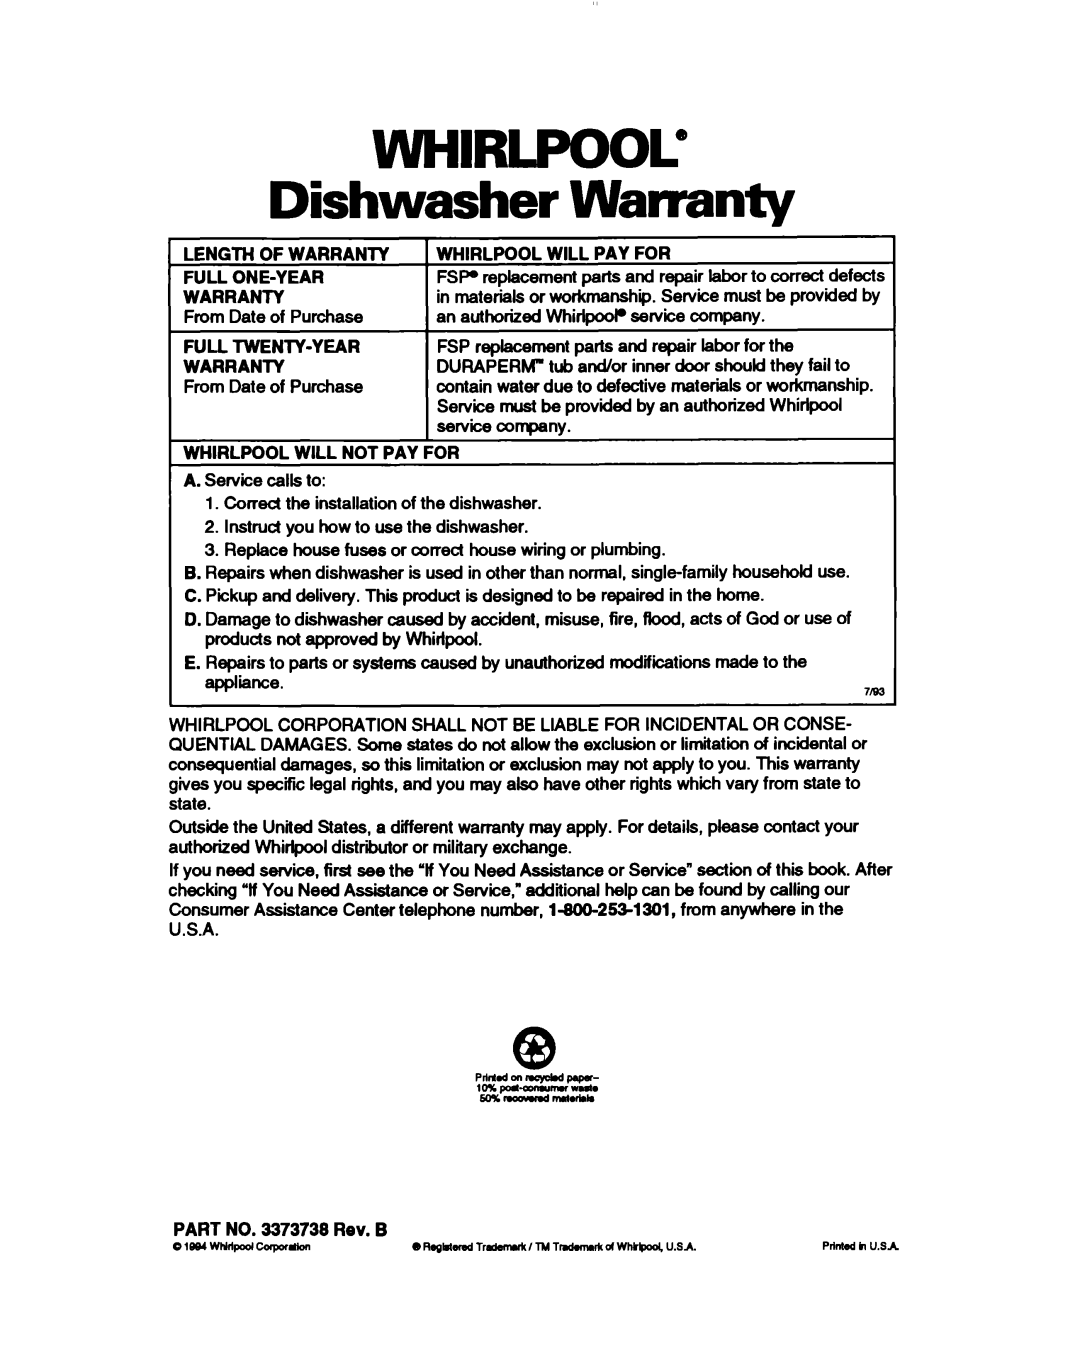 Whirlpool DU4000, DU8400, DU8100, DU8000 warranty Warranty, Dishwasher, Whirlpool” 